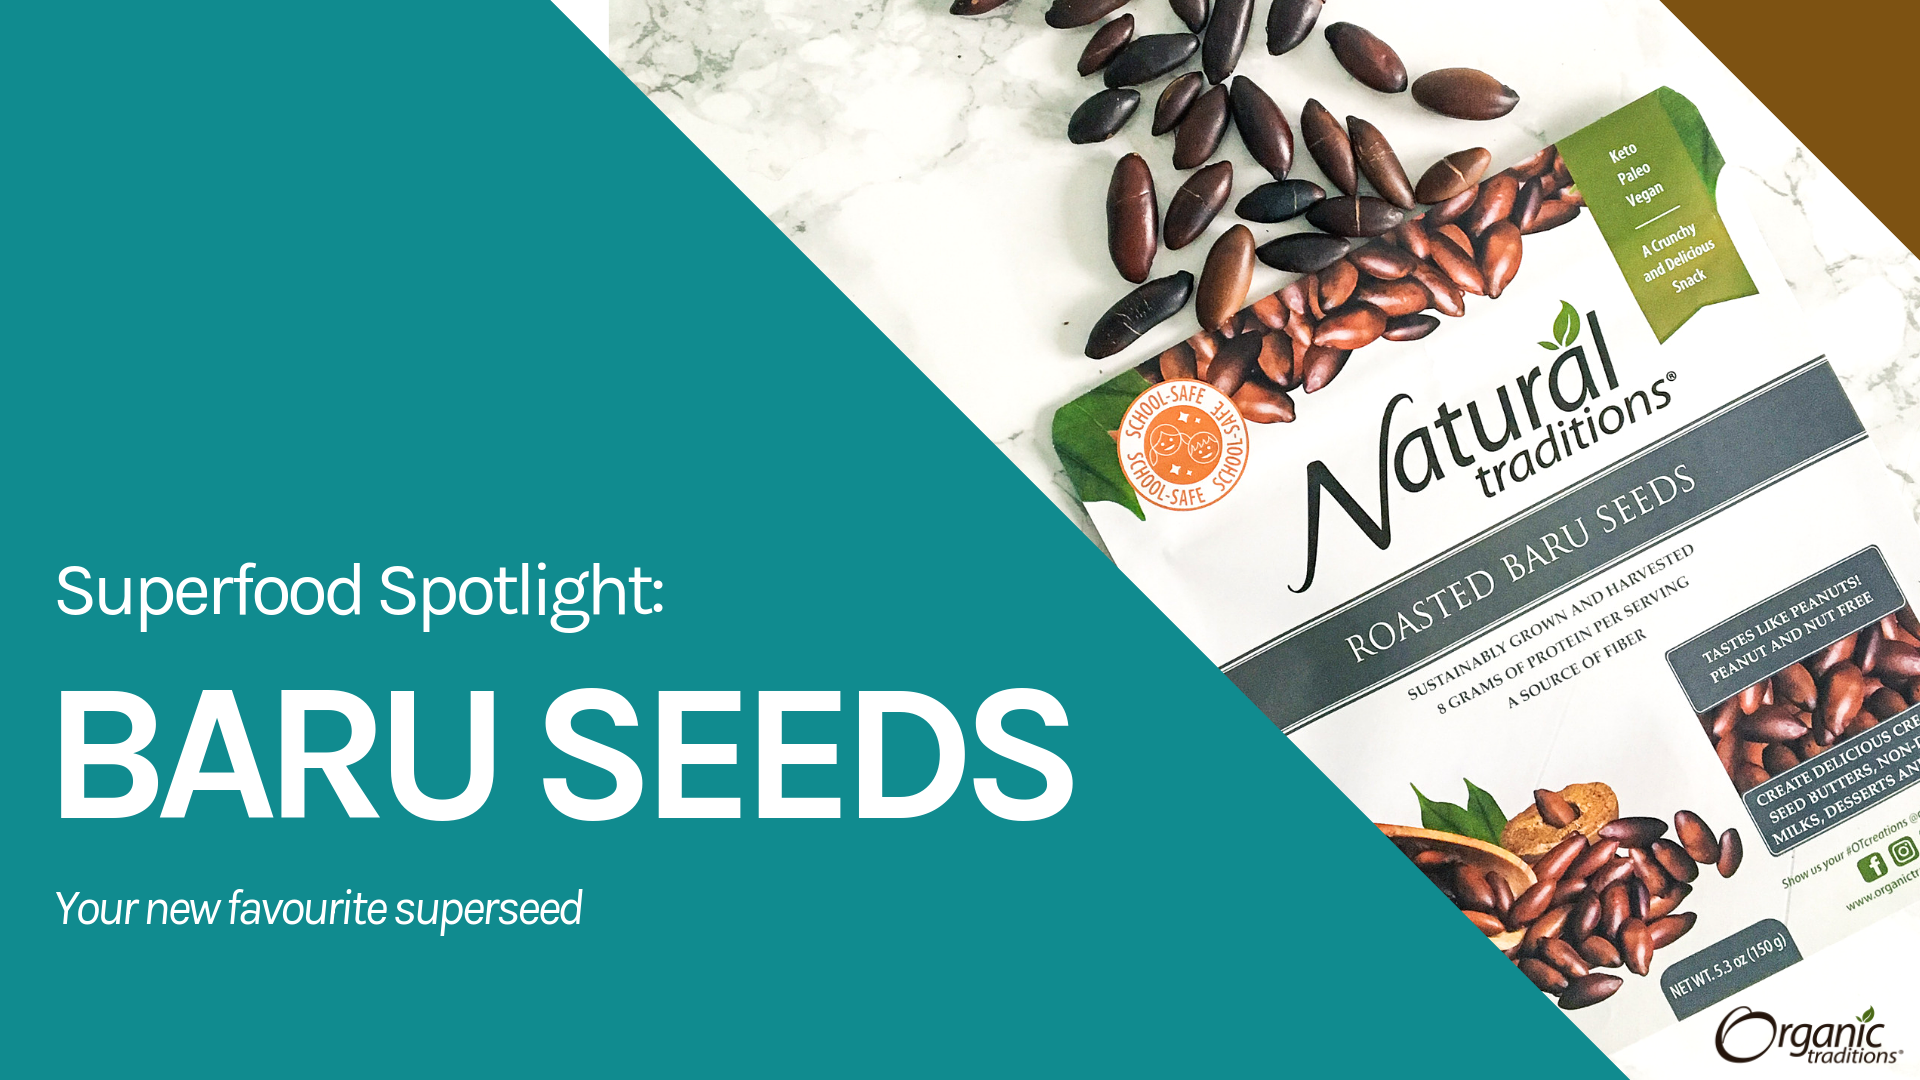 Superfood Spotlight: Baru Seeds!